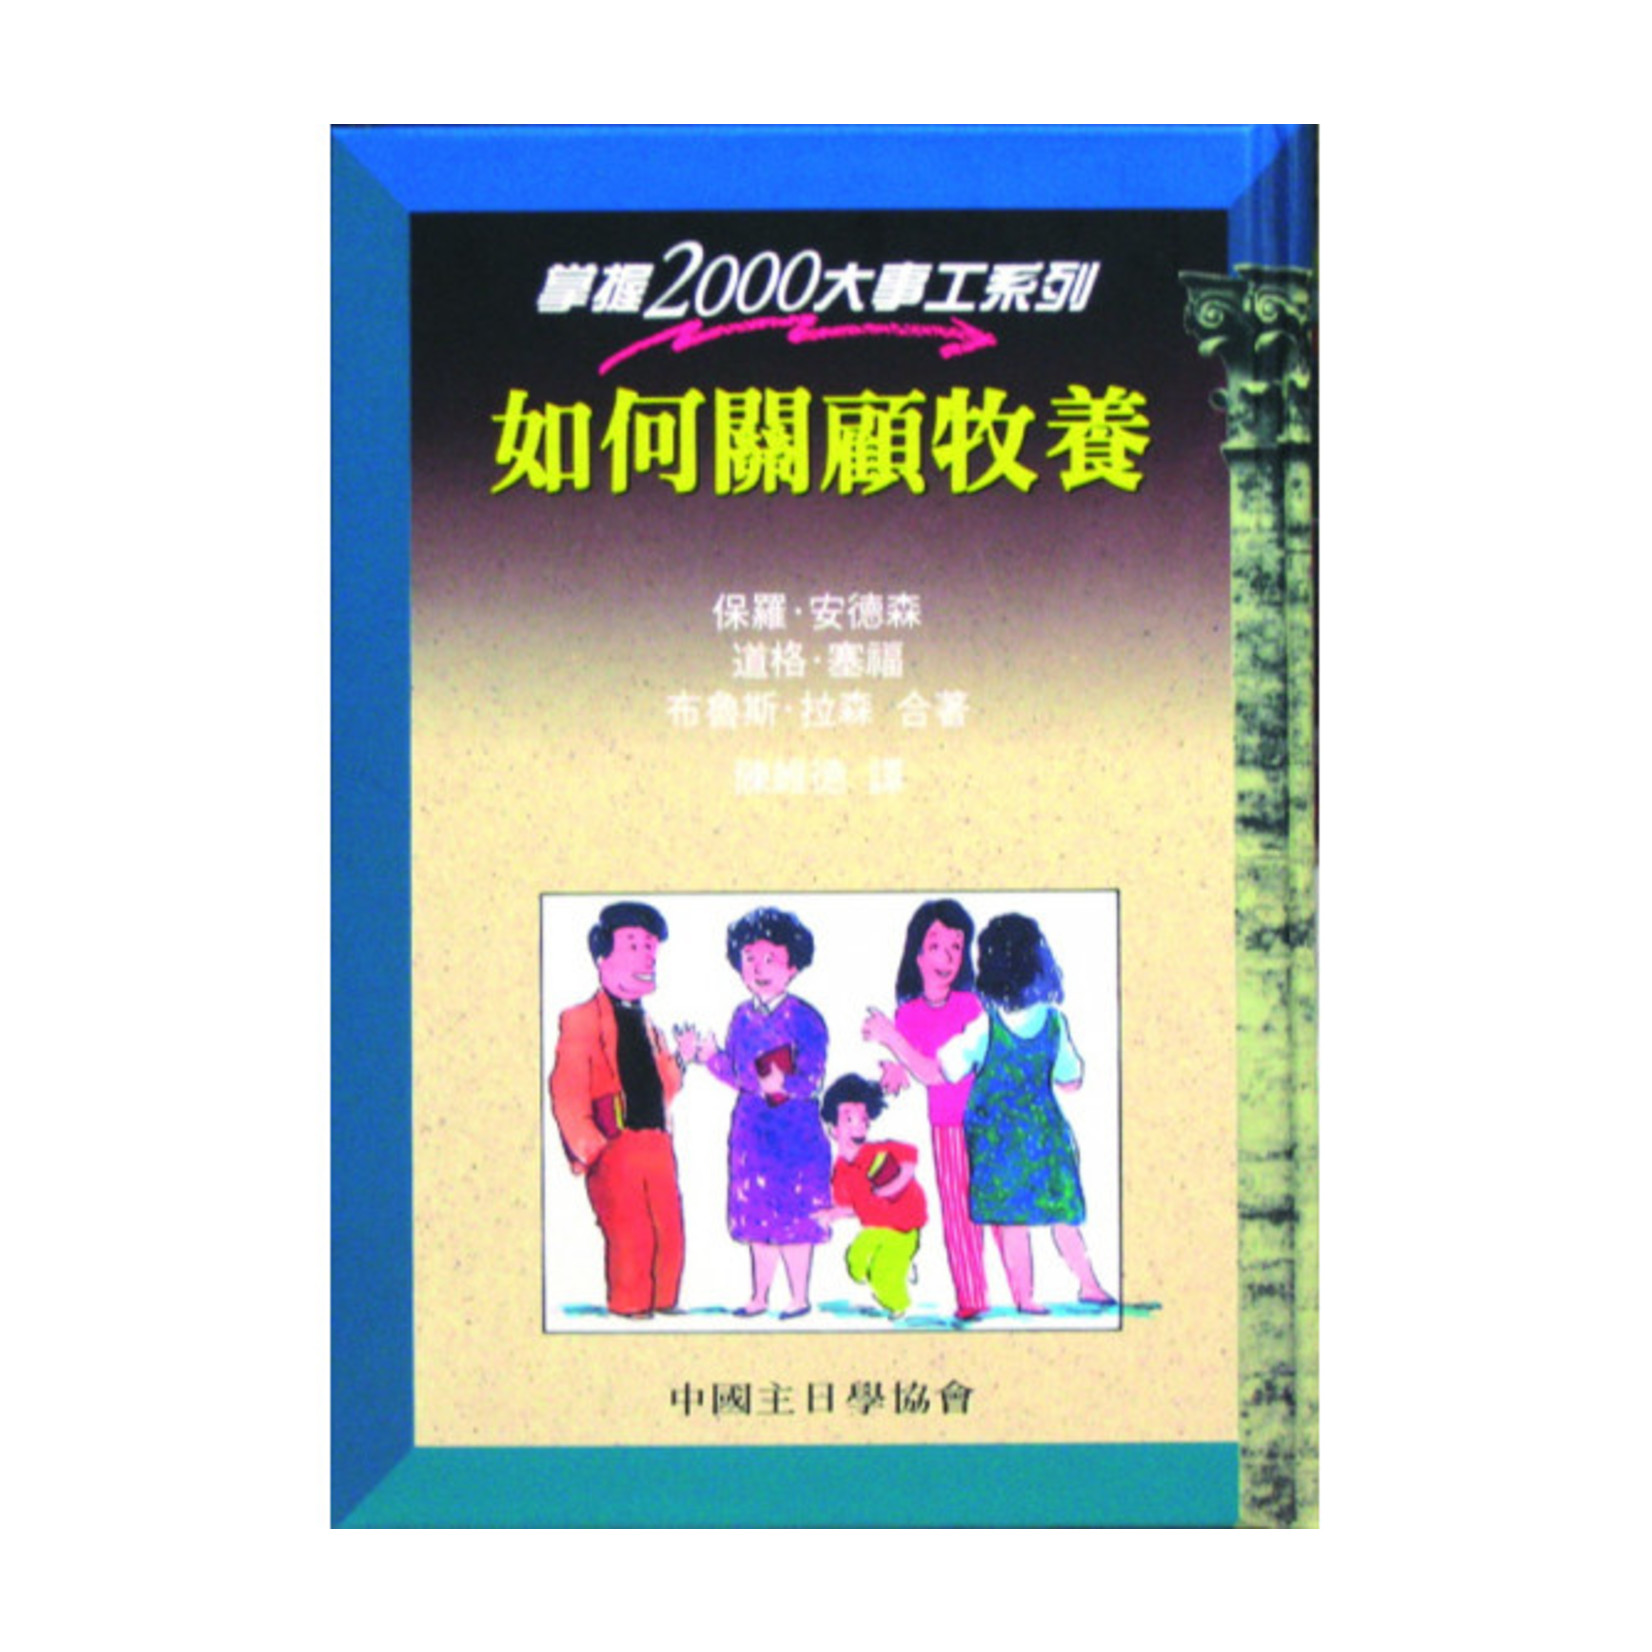 中國主日學協會 China Sunday School Association 如何關顧牧養（掌握2000大事工系列）Mastering Pastoral Care